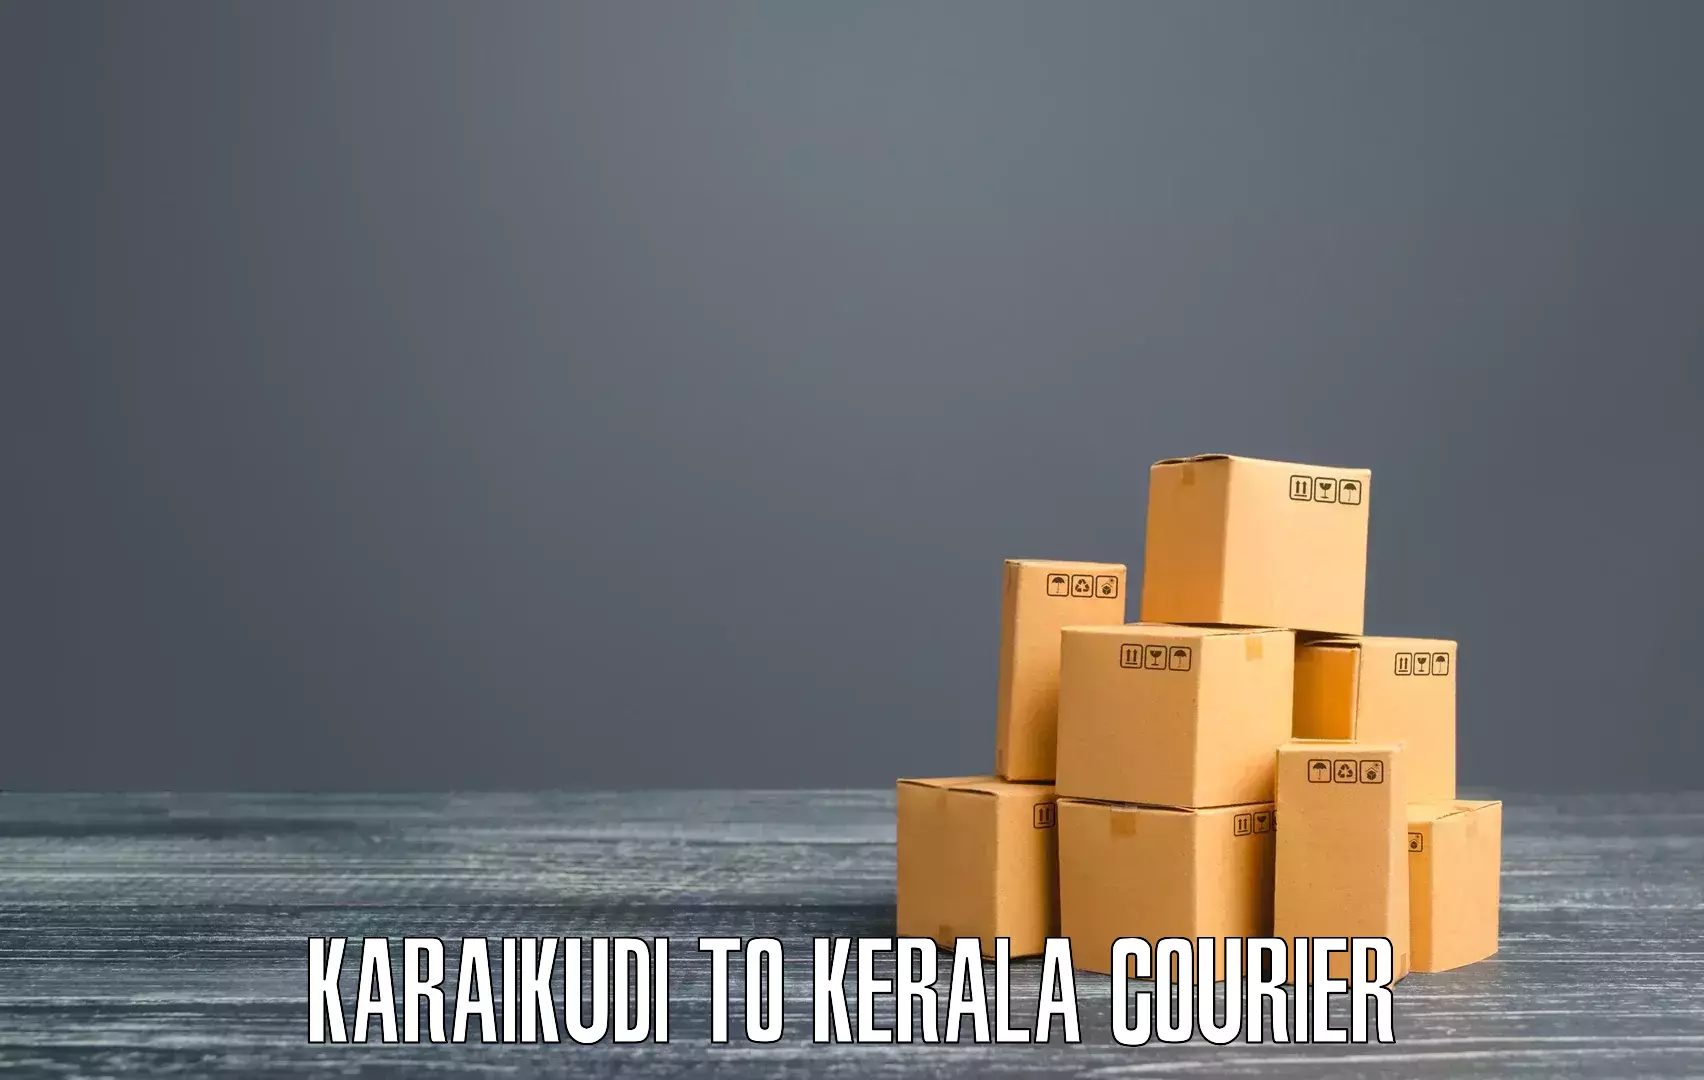 Customer-centric shipping Karaikudi to Perambra